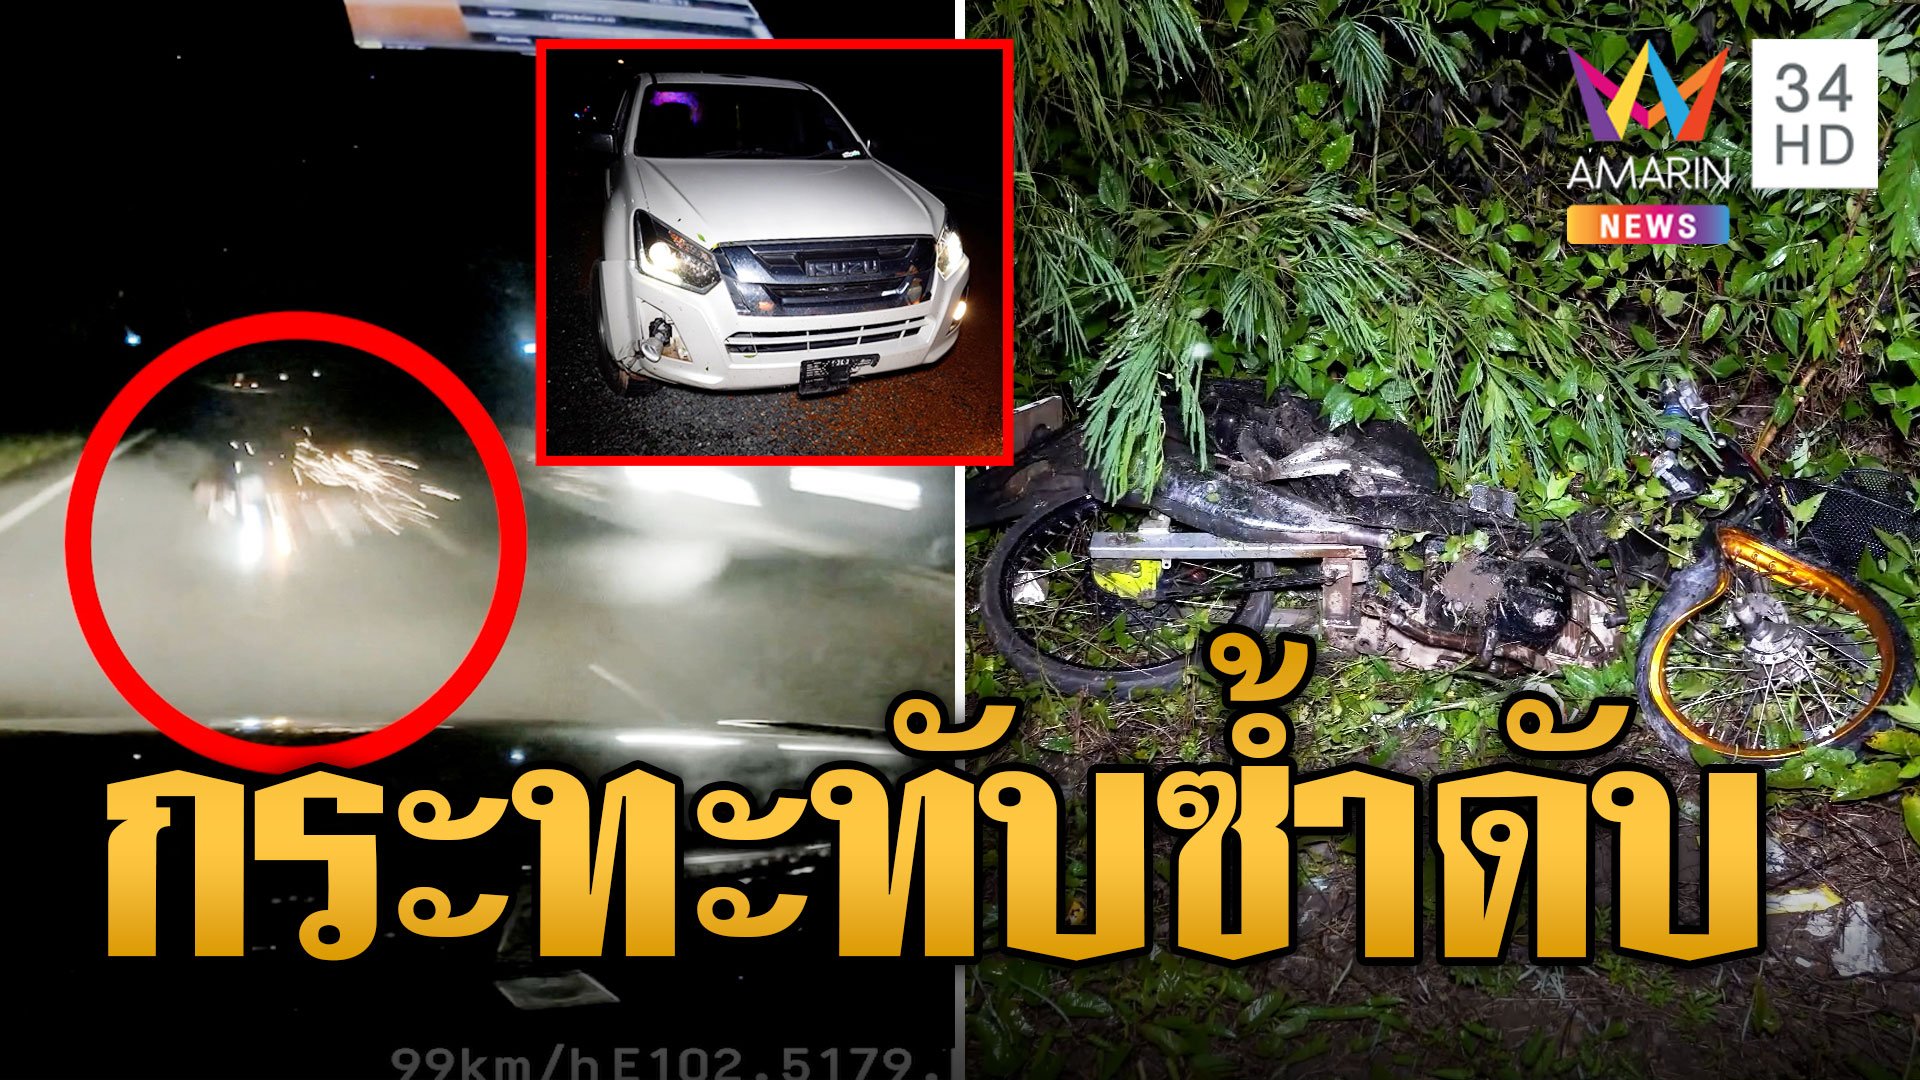 มอเตอร์ไซค์ชนท้ายกระบะเสียหลักล้ม รถเลนสวนทับซ้ำเสียชีวิต | ข่าวเที่ยงอมรินทร์ | 24 ต.ค. 66 | AMARIN TVHD34